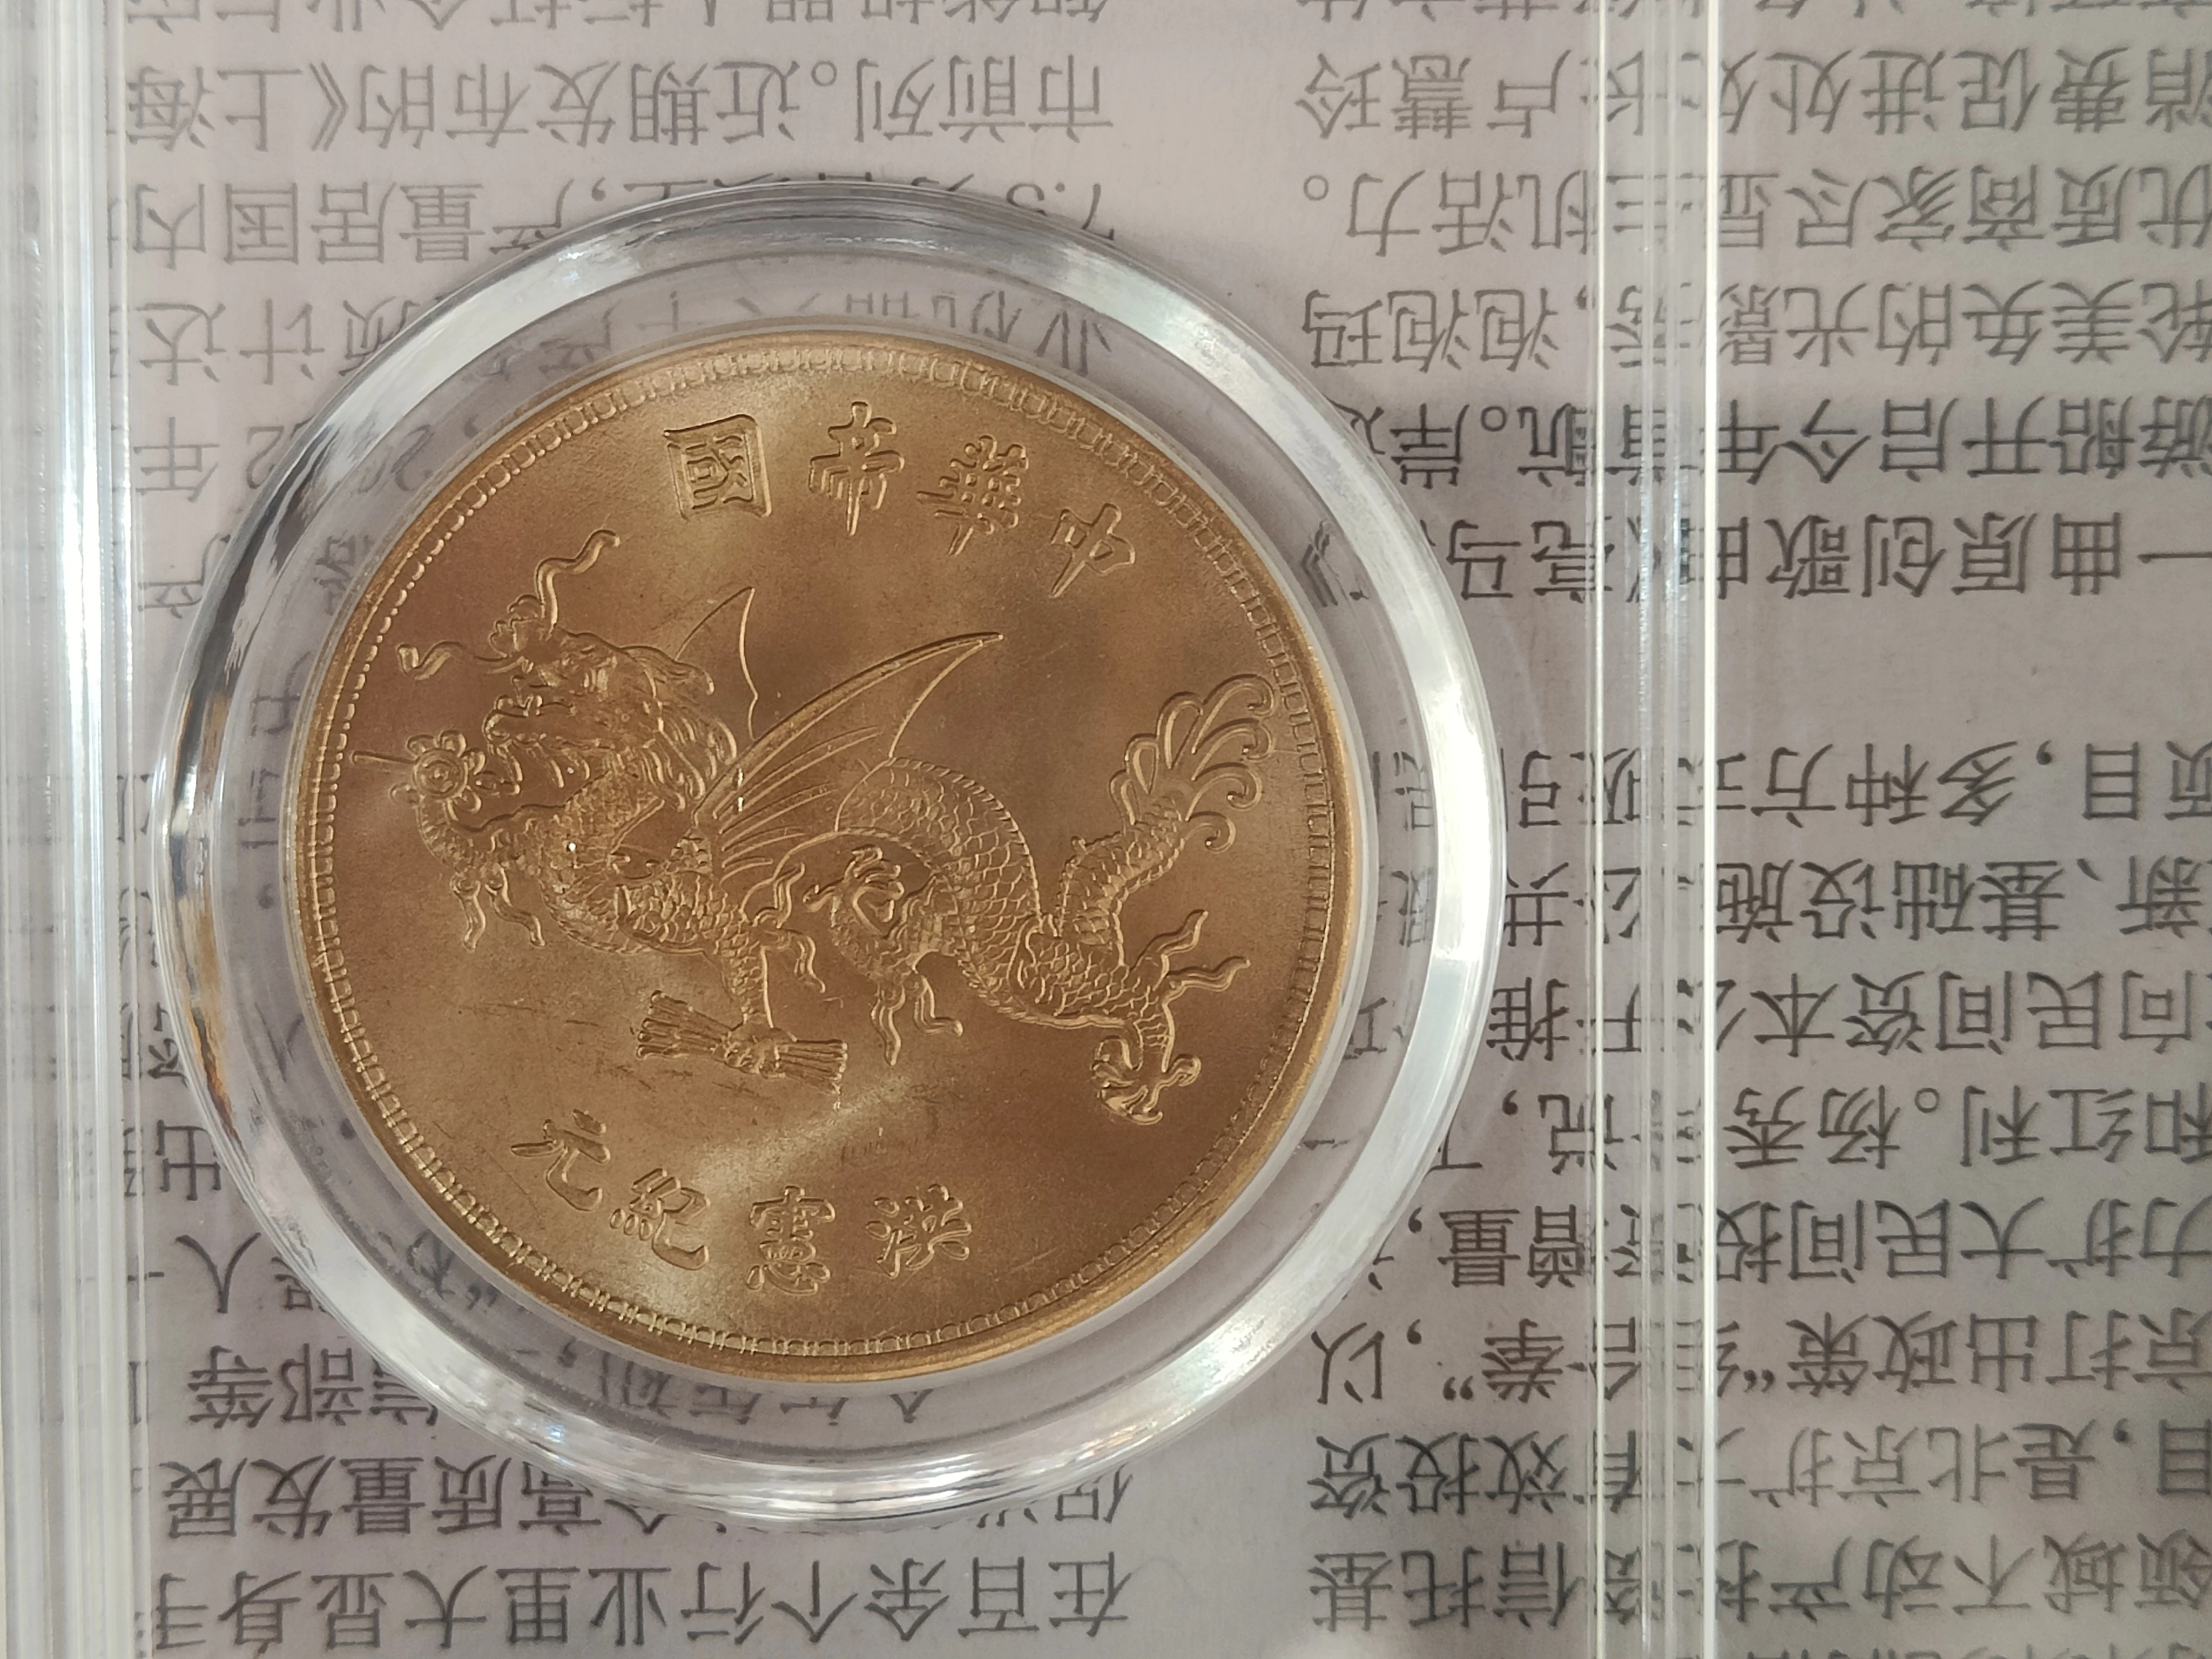 Первый год Китайской Республики, высокая шляпа с летающим драконом, набор серебряных долларовых банкнот, рейтинговая валюта, украшение для монет. Изображение 1